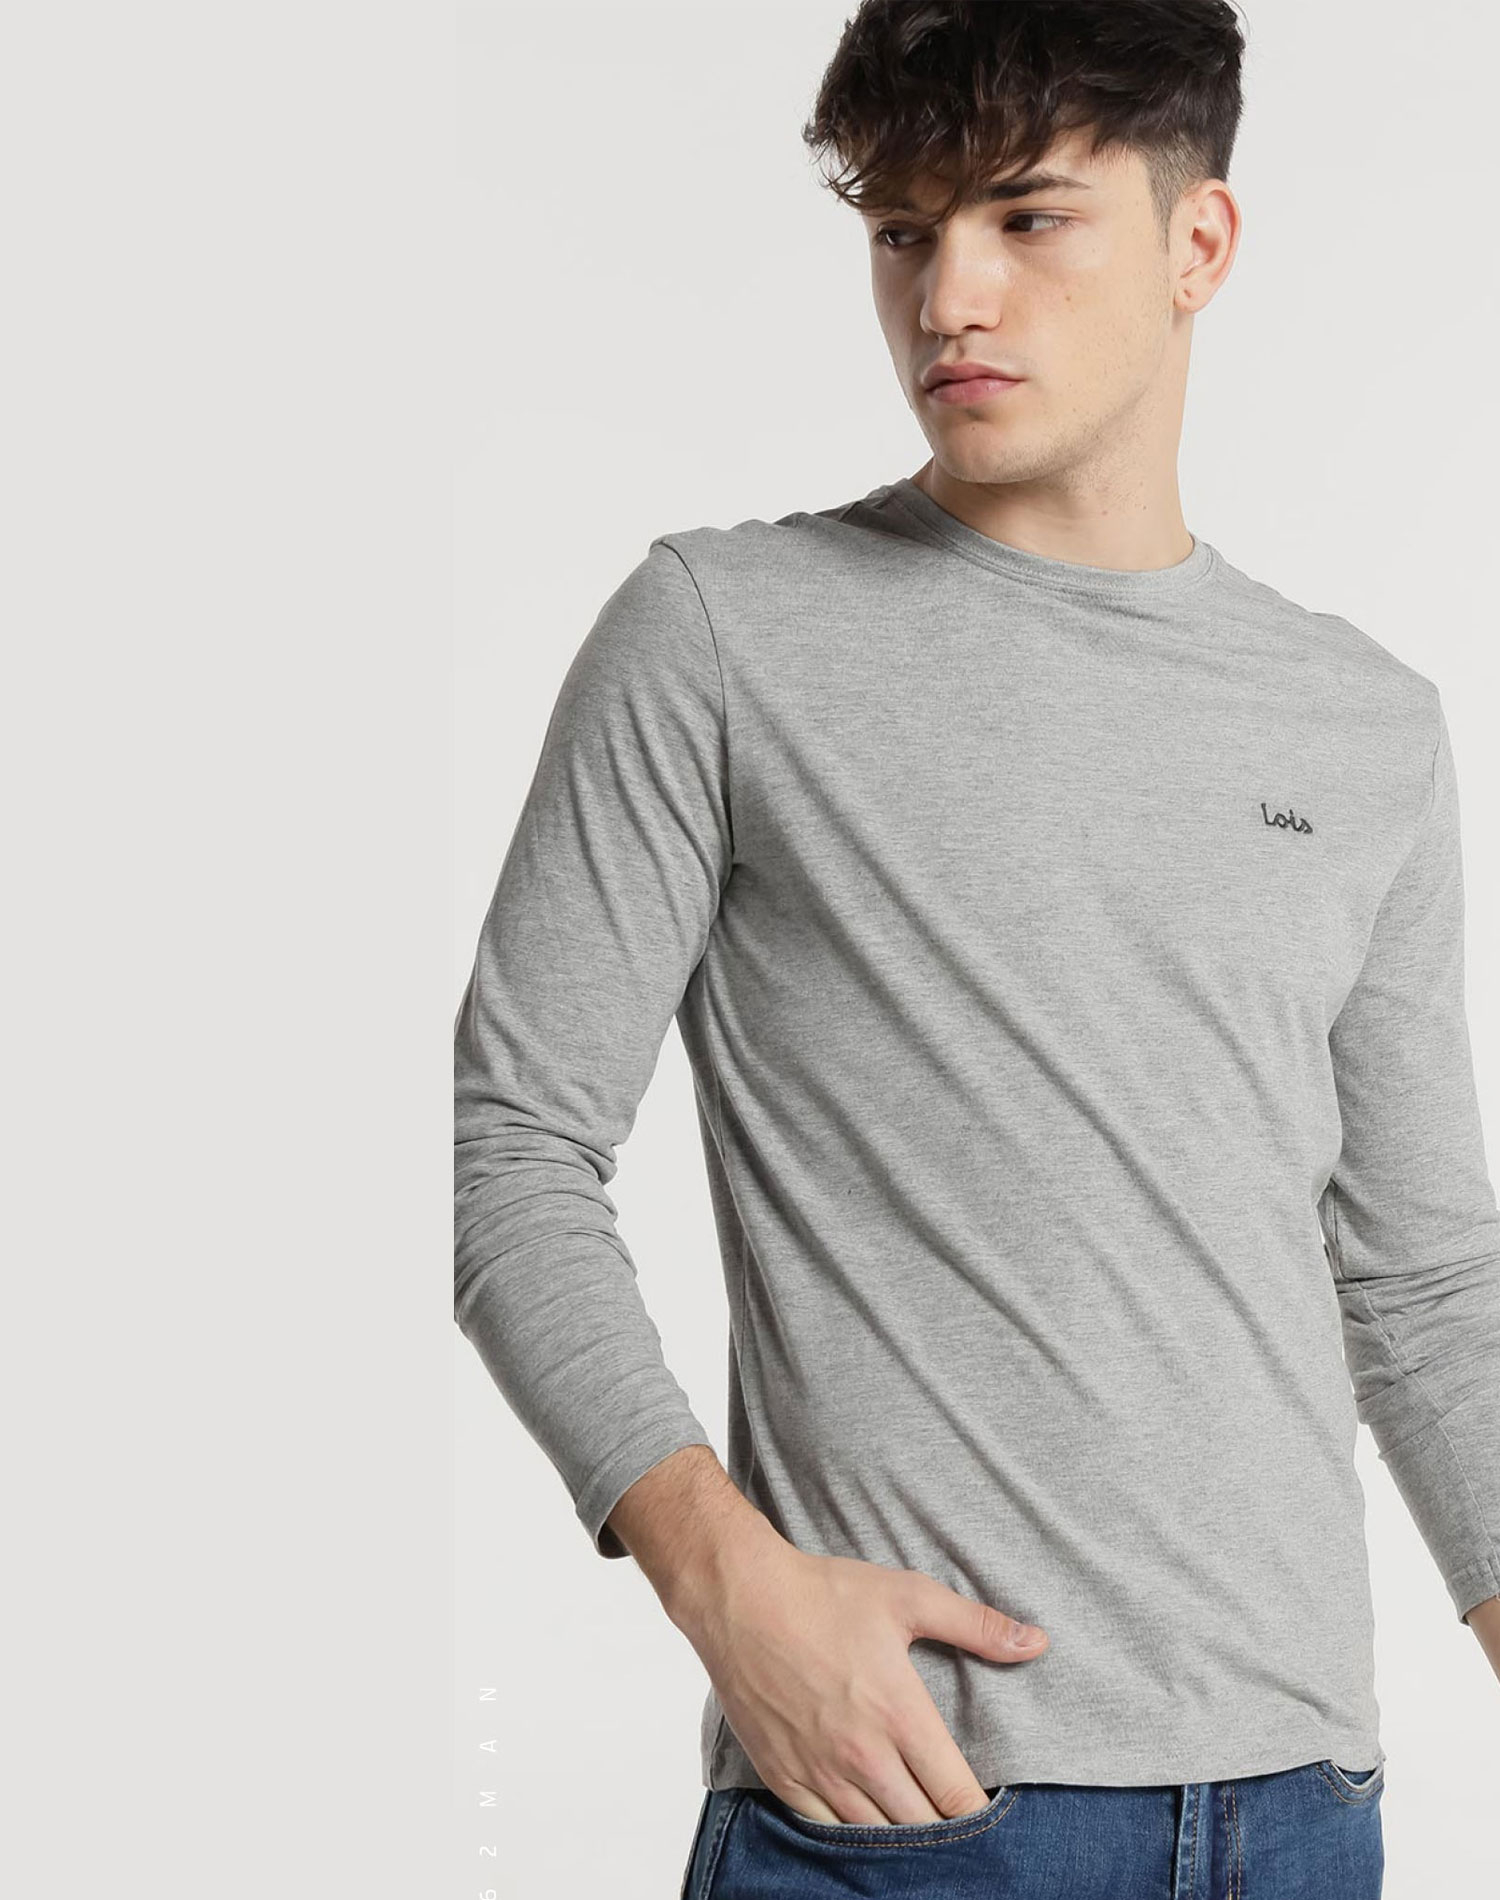 Lois camiseta de hombre de m/l 18415/490 gris